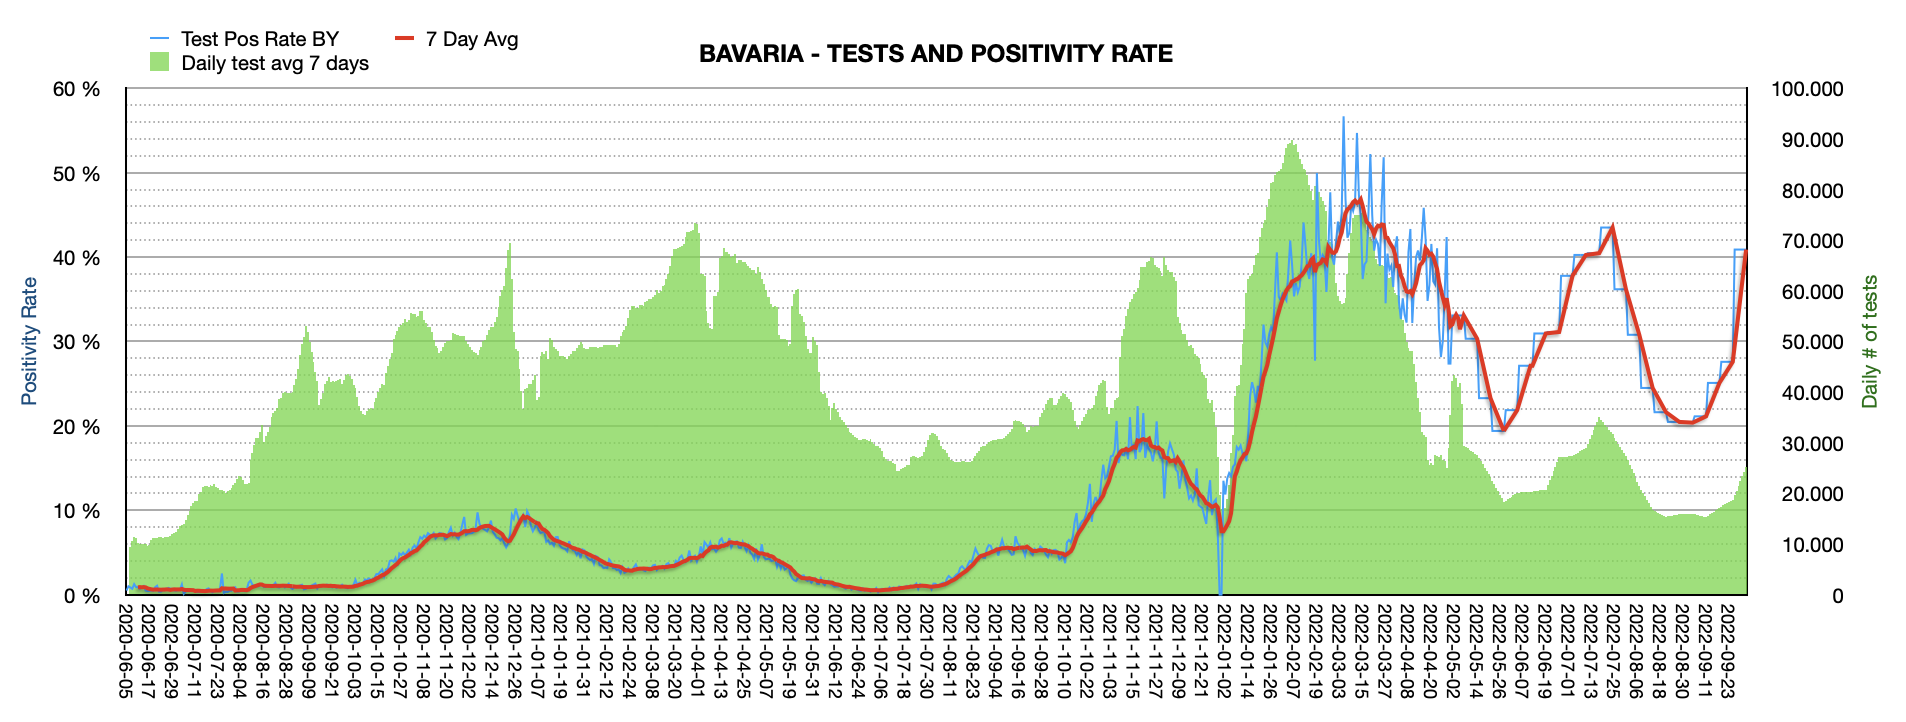 Grafik mit durchgeführten PCR Tests pro Tag in Bayern seit Juni 2020. Die Zahl der Tests pro Tag ist mit ca. 25.264 weiterhin niedrig und weit vom Maximum von ca. 100.000 Tests/Tag entfernt. Die Positivrate springt auf jetzt 40,88%.